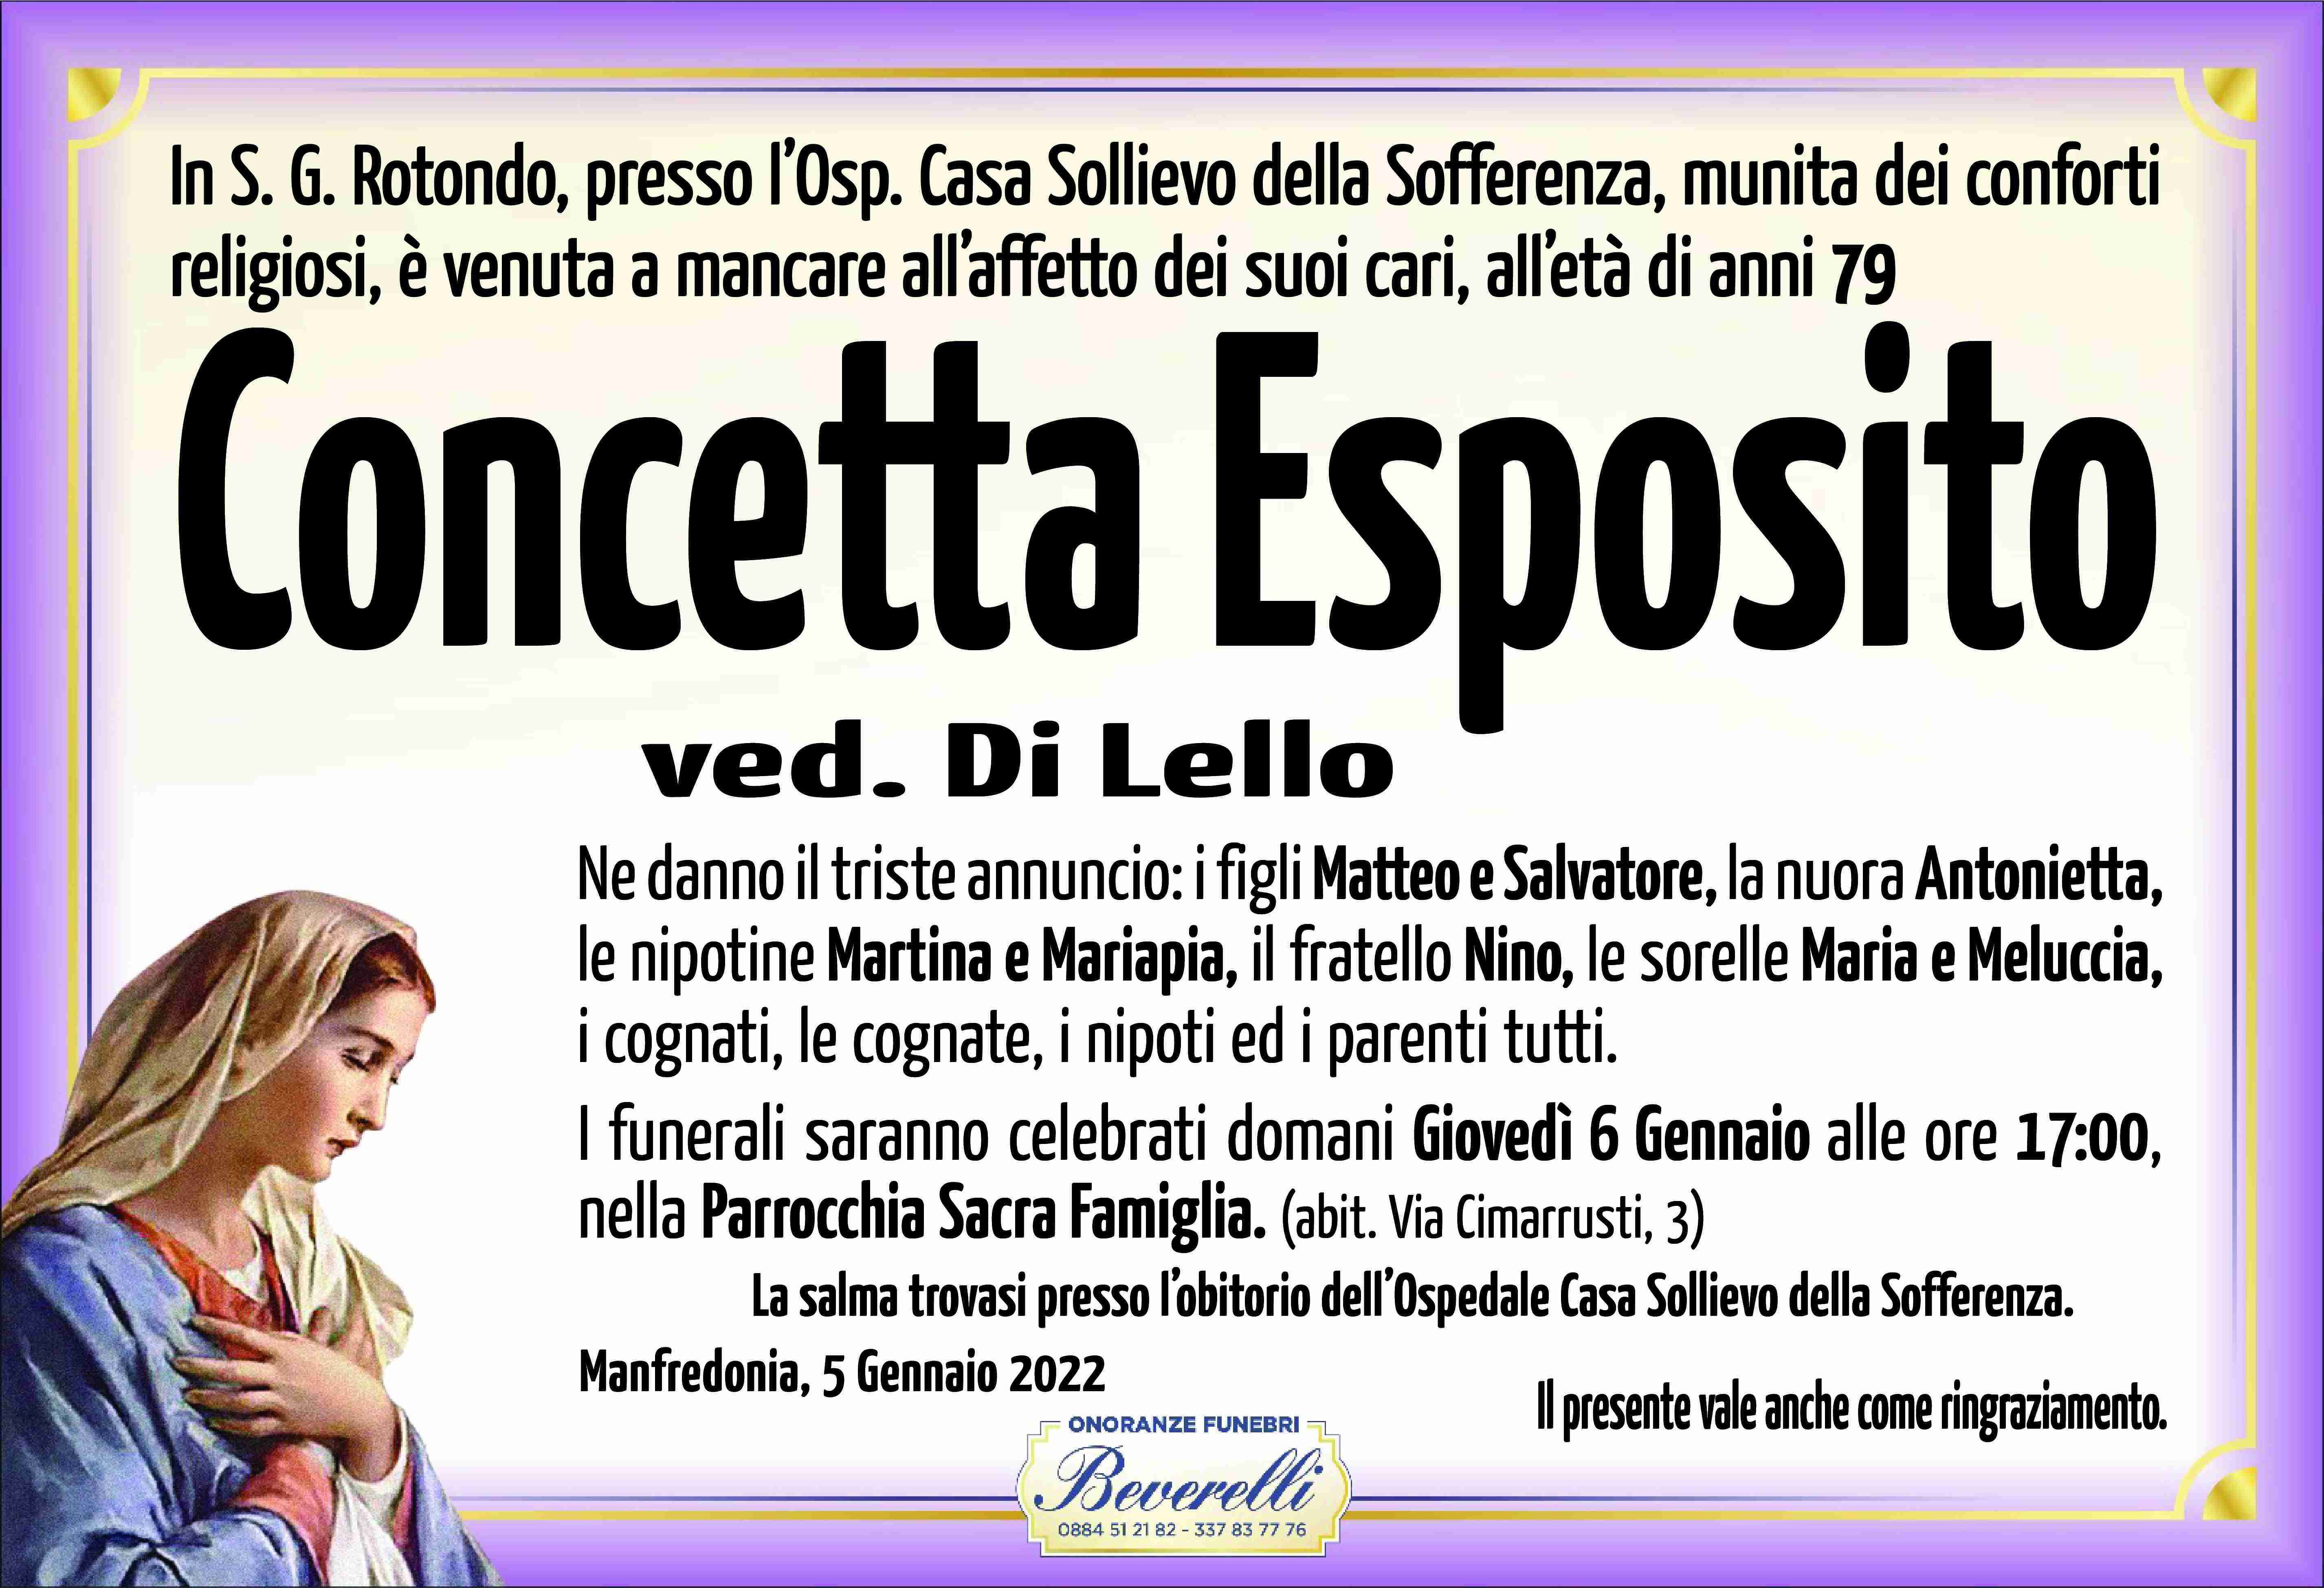 Concetta Esposito